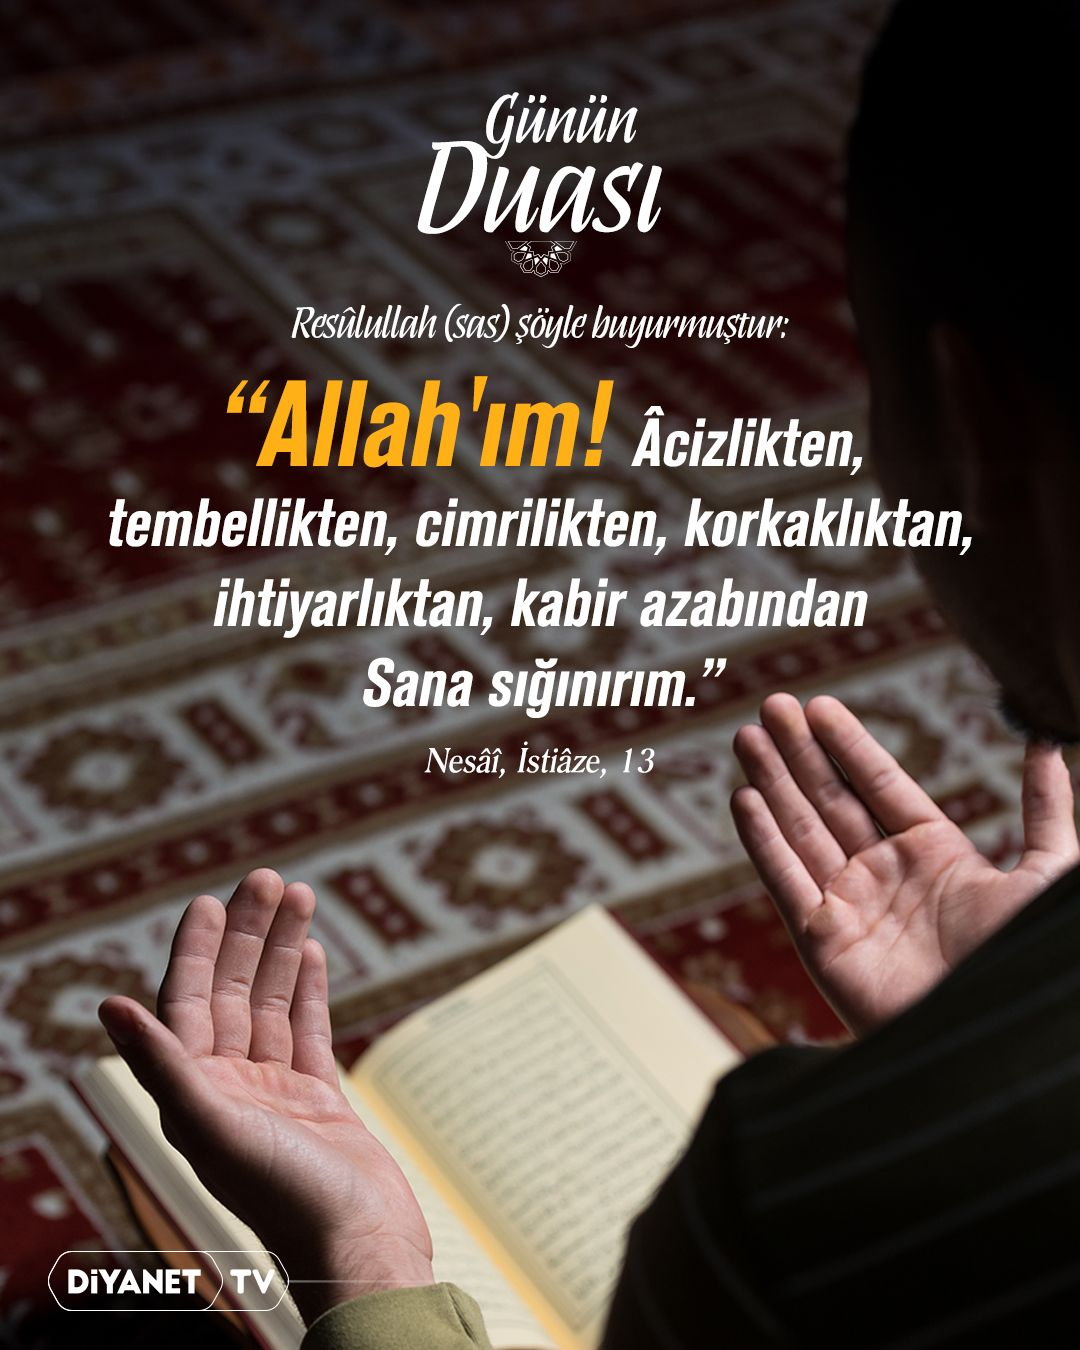 Zonguldak İl Müftülüğü, Hz. Muhammed'in dile getirdiği dua ile toplumu desteklemeye çağırıyor.